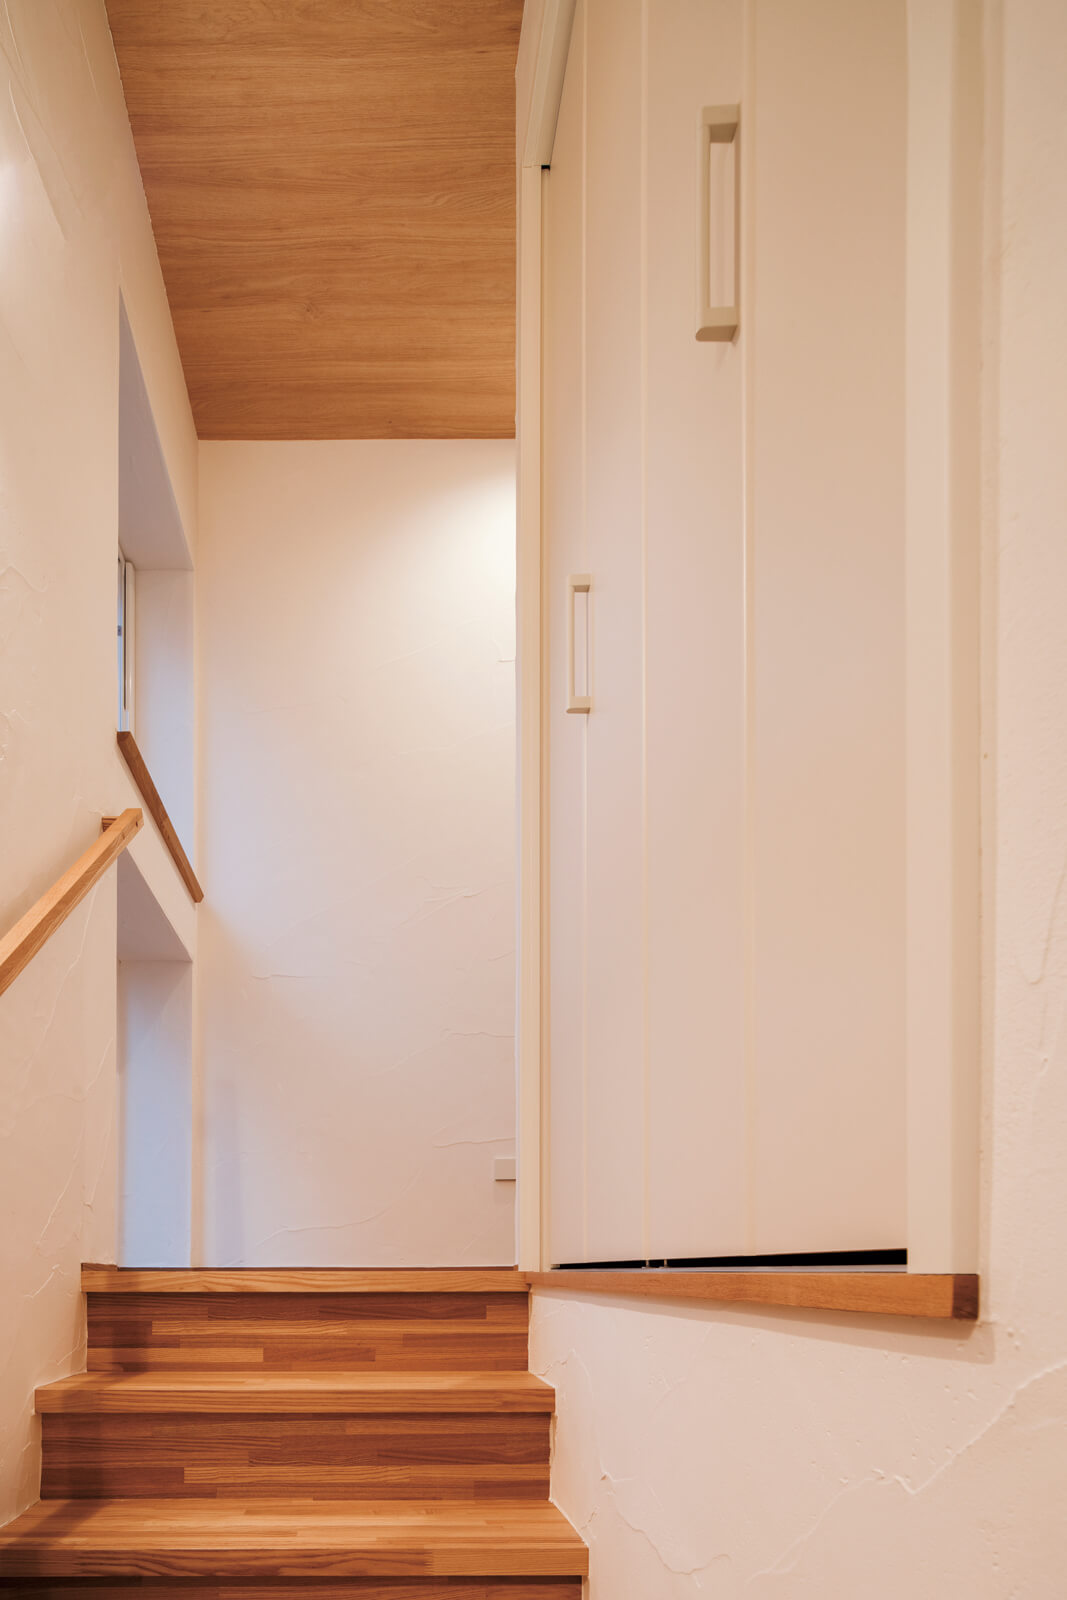 階段の動線上にもクローゼットを設え収納空間を確保。2階廊下の突き当たりは、窓と地窓を2段階に配置して足元まで明るく